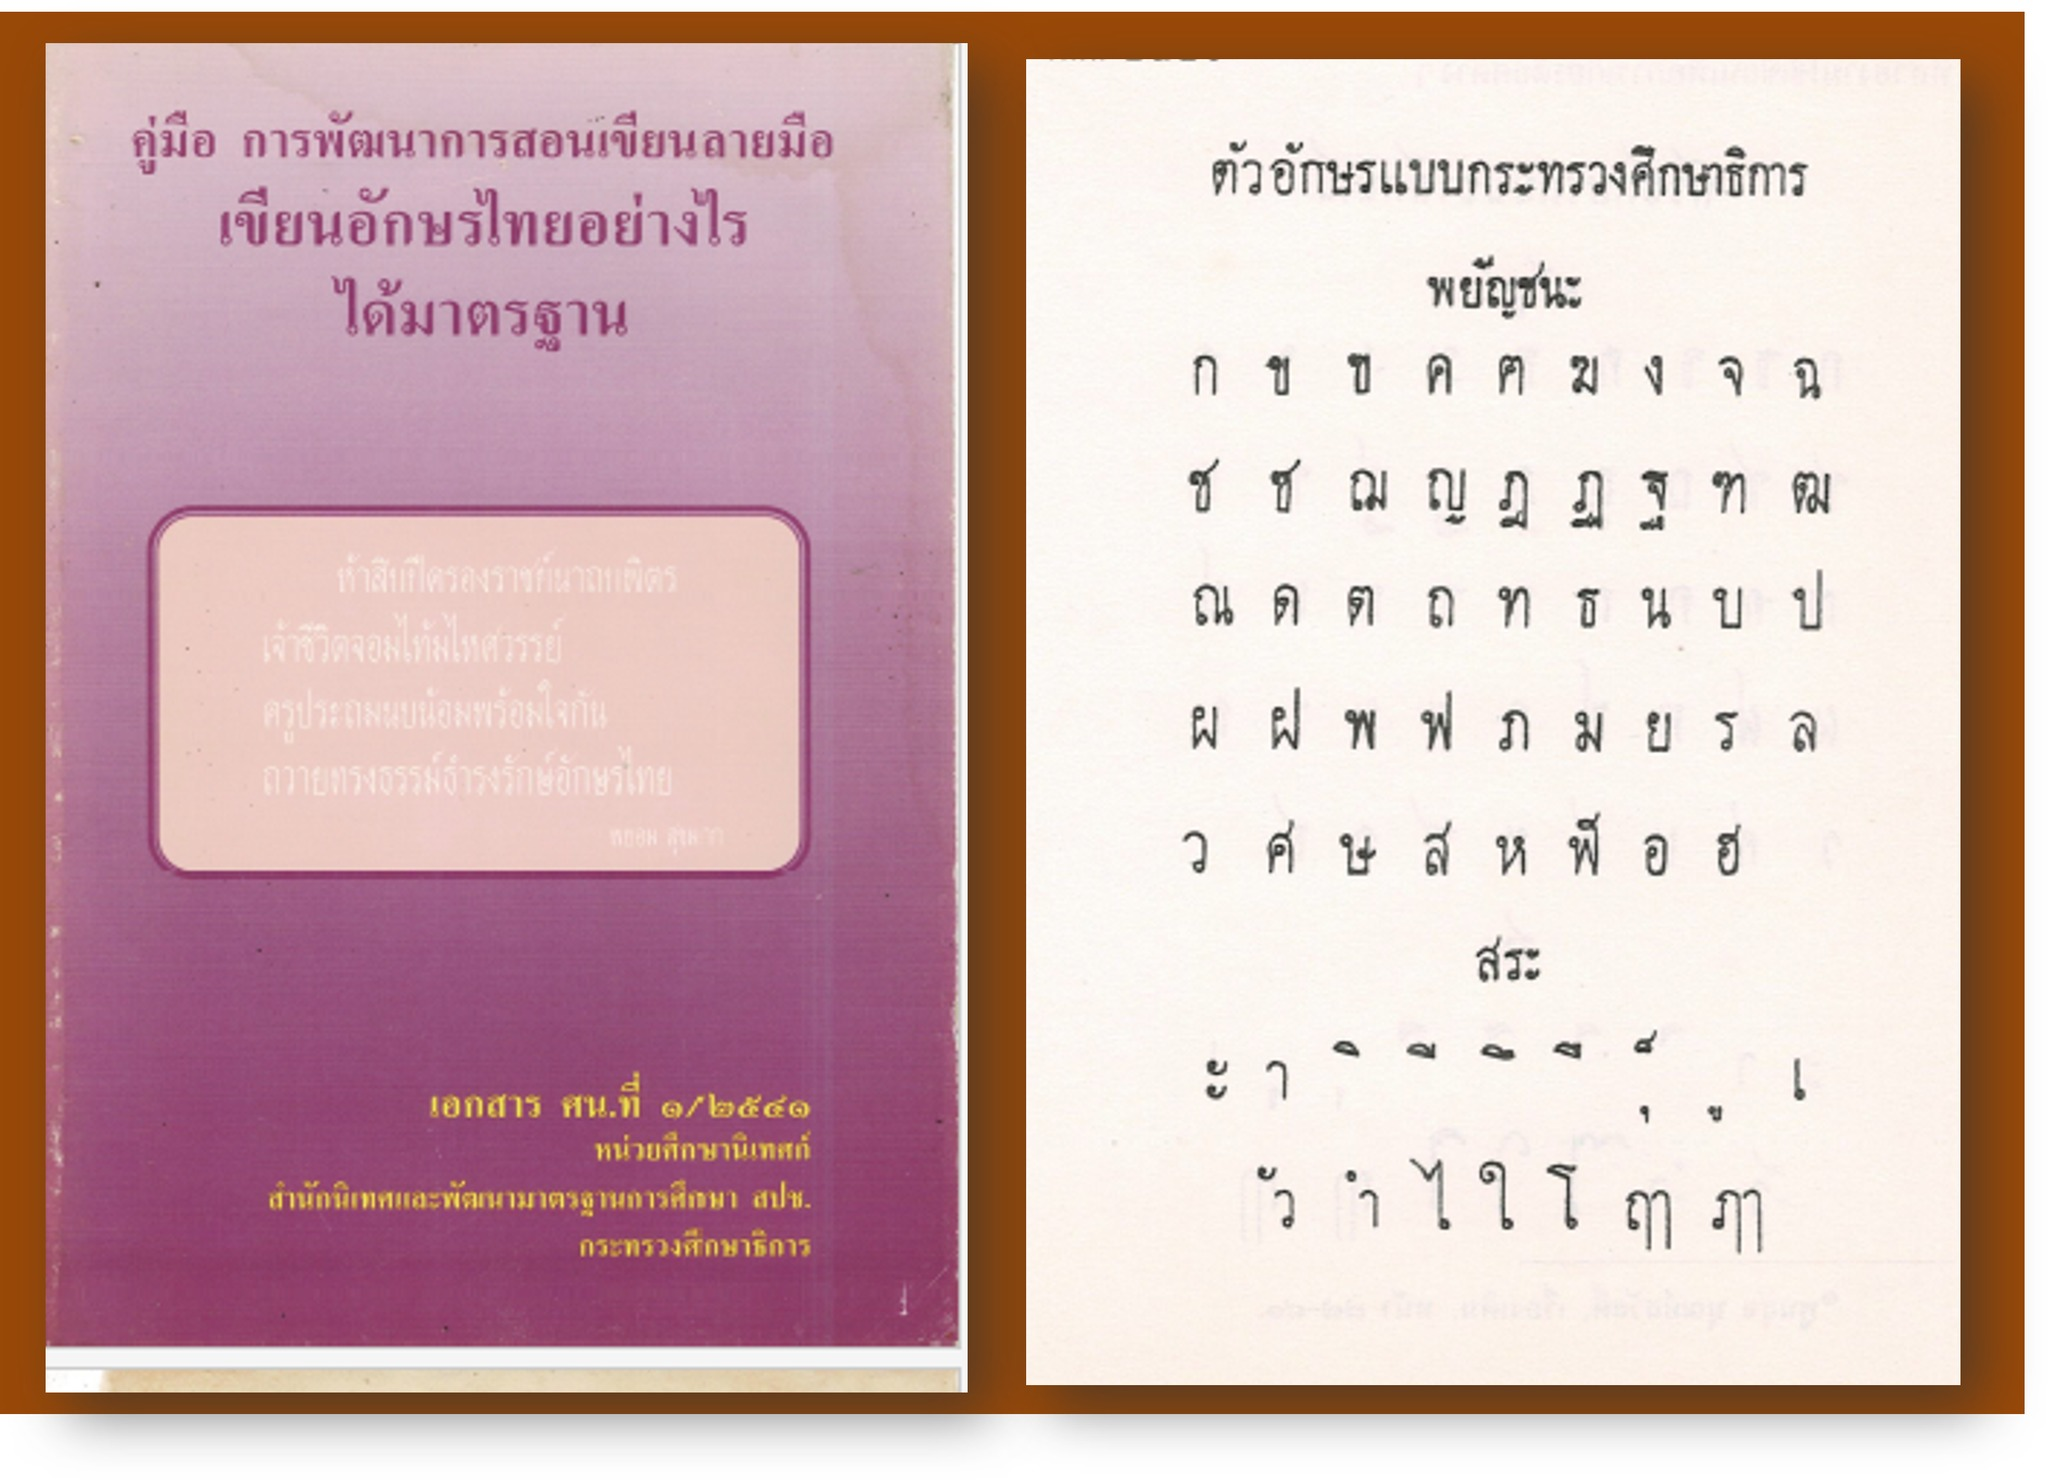 ดาวน์โหลด คู่มือการพัฒนาการสอนเขียนลายมือเขียนอักษรไทยอย่างไรได้มาตรฐาน กระทรวงศึกษาธิการ